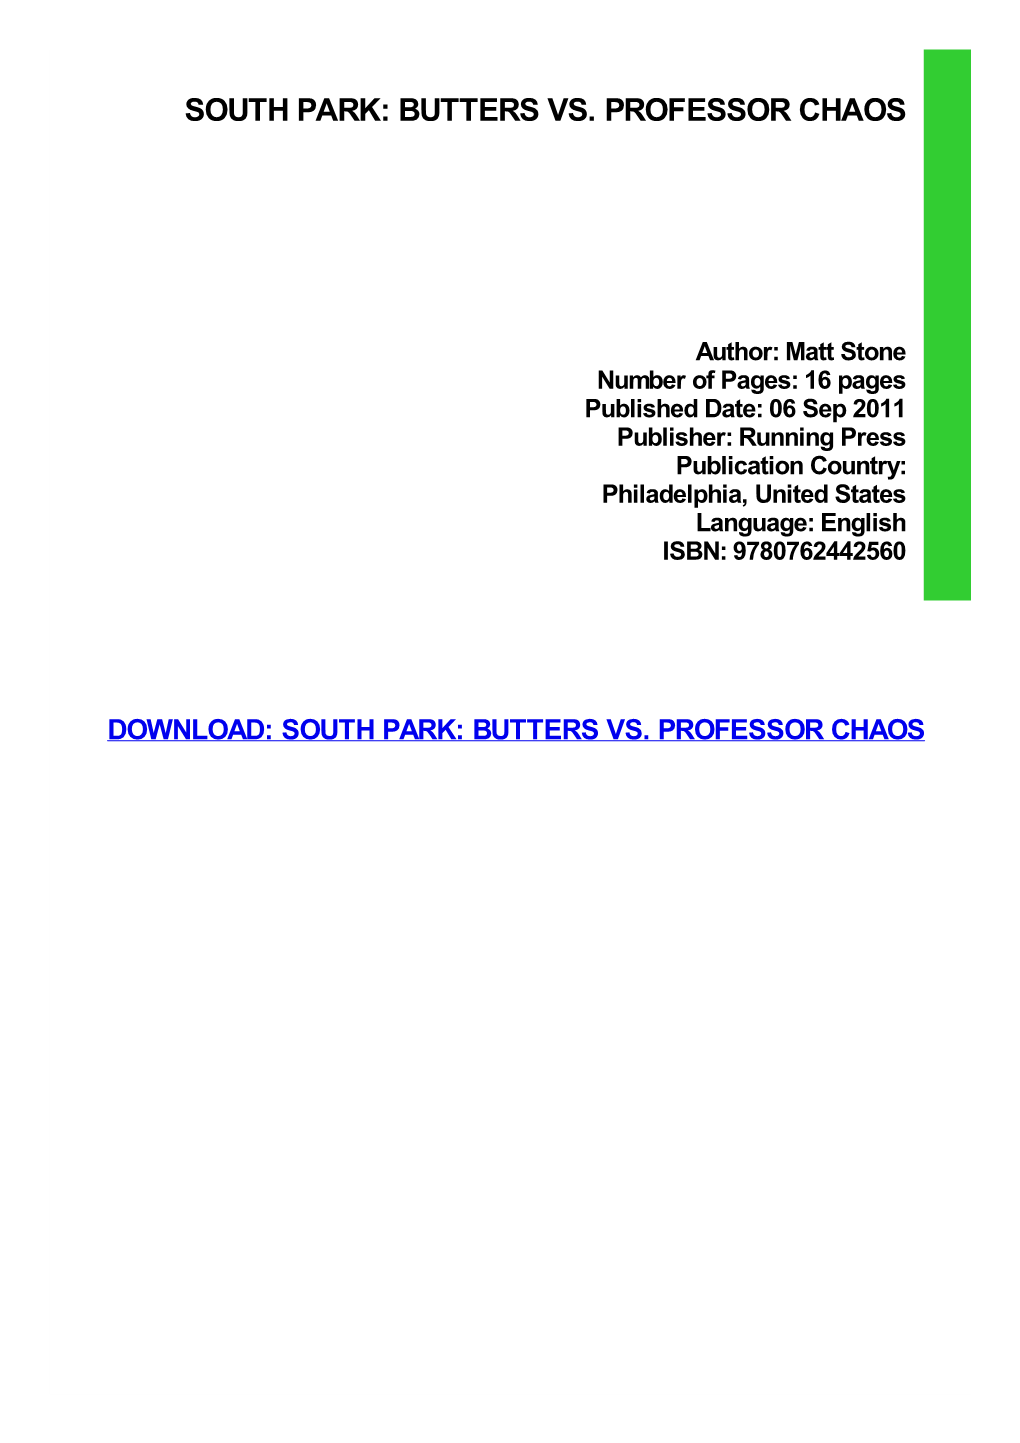 South Park: Butters Vs. Professor Chaos Kindle